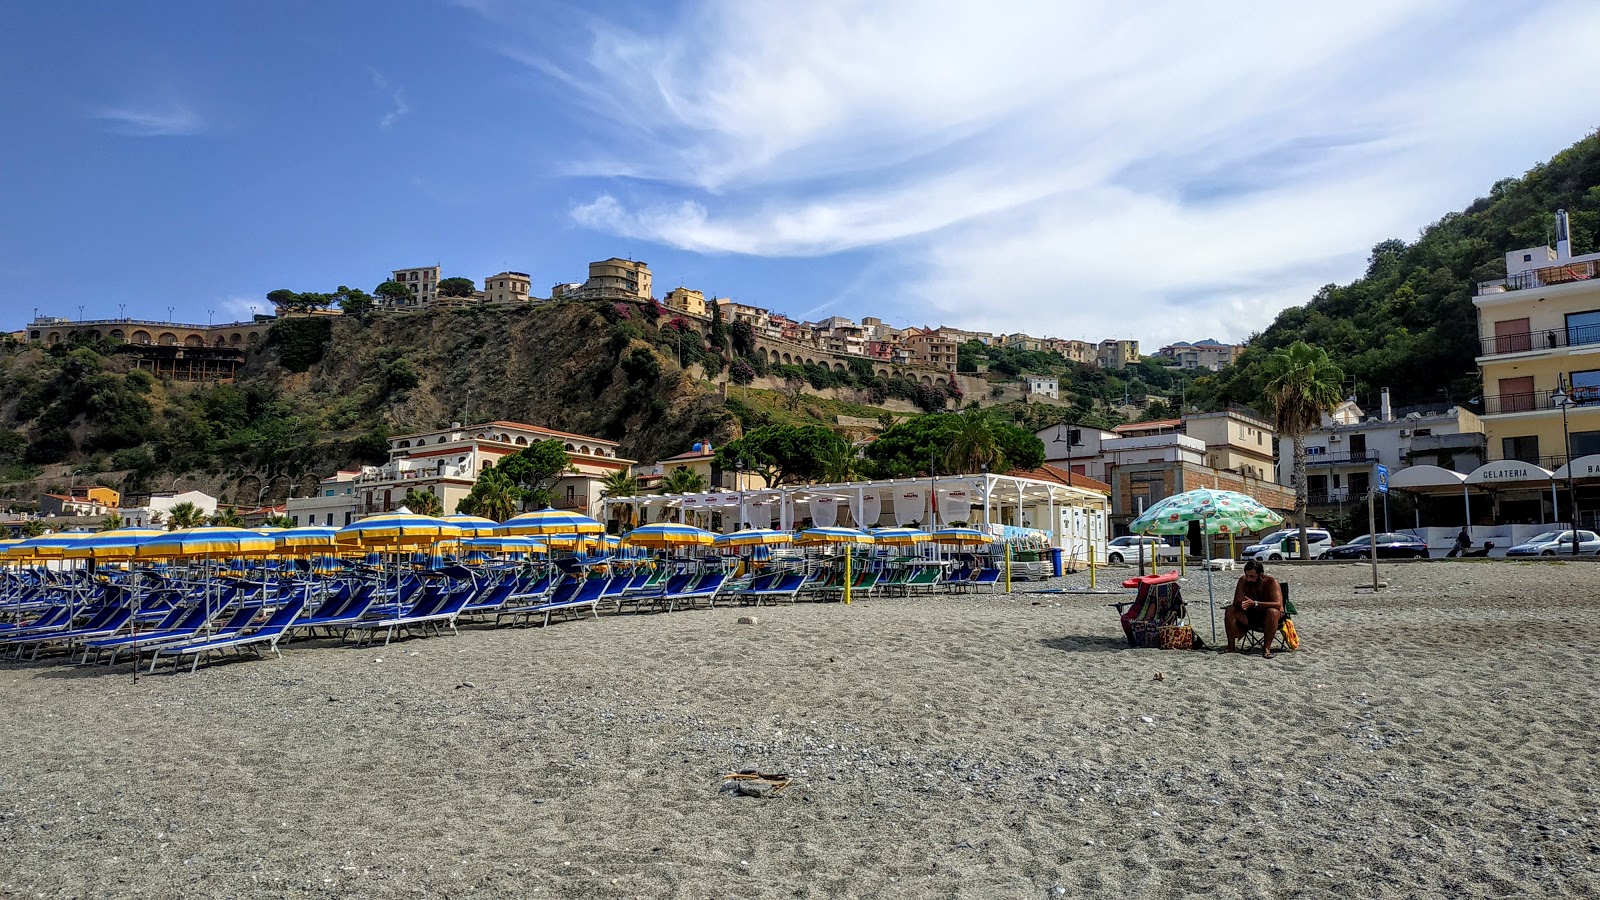 Foto af Spiaggia Di Scilla med medium niveau af renlighed